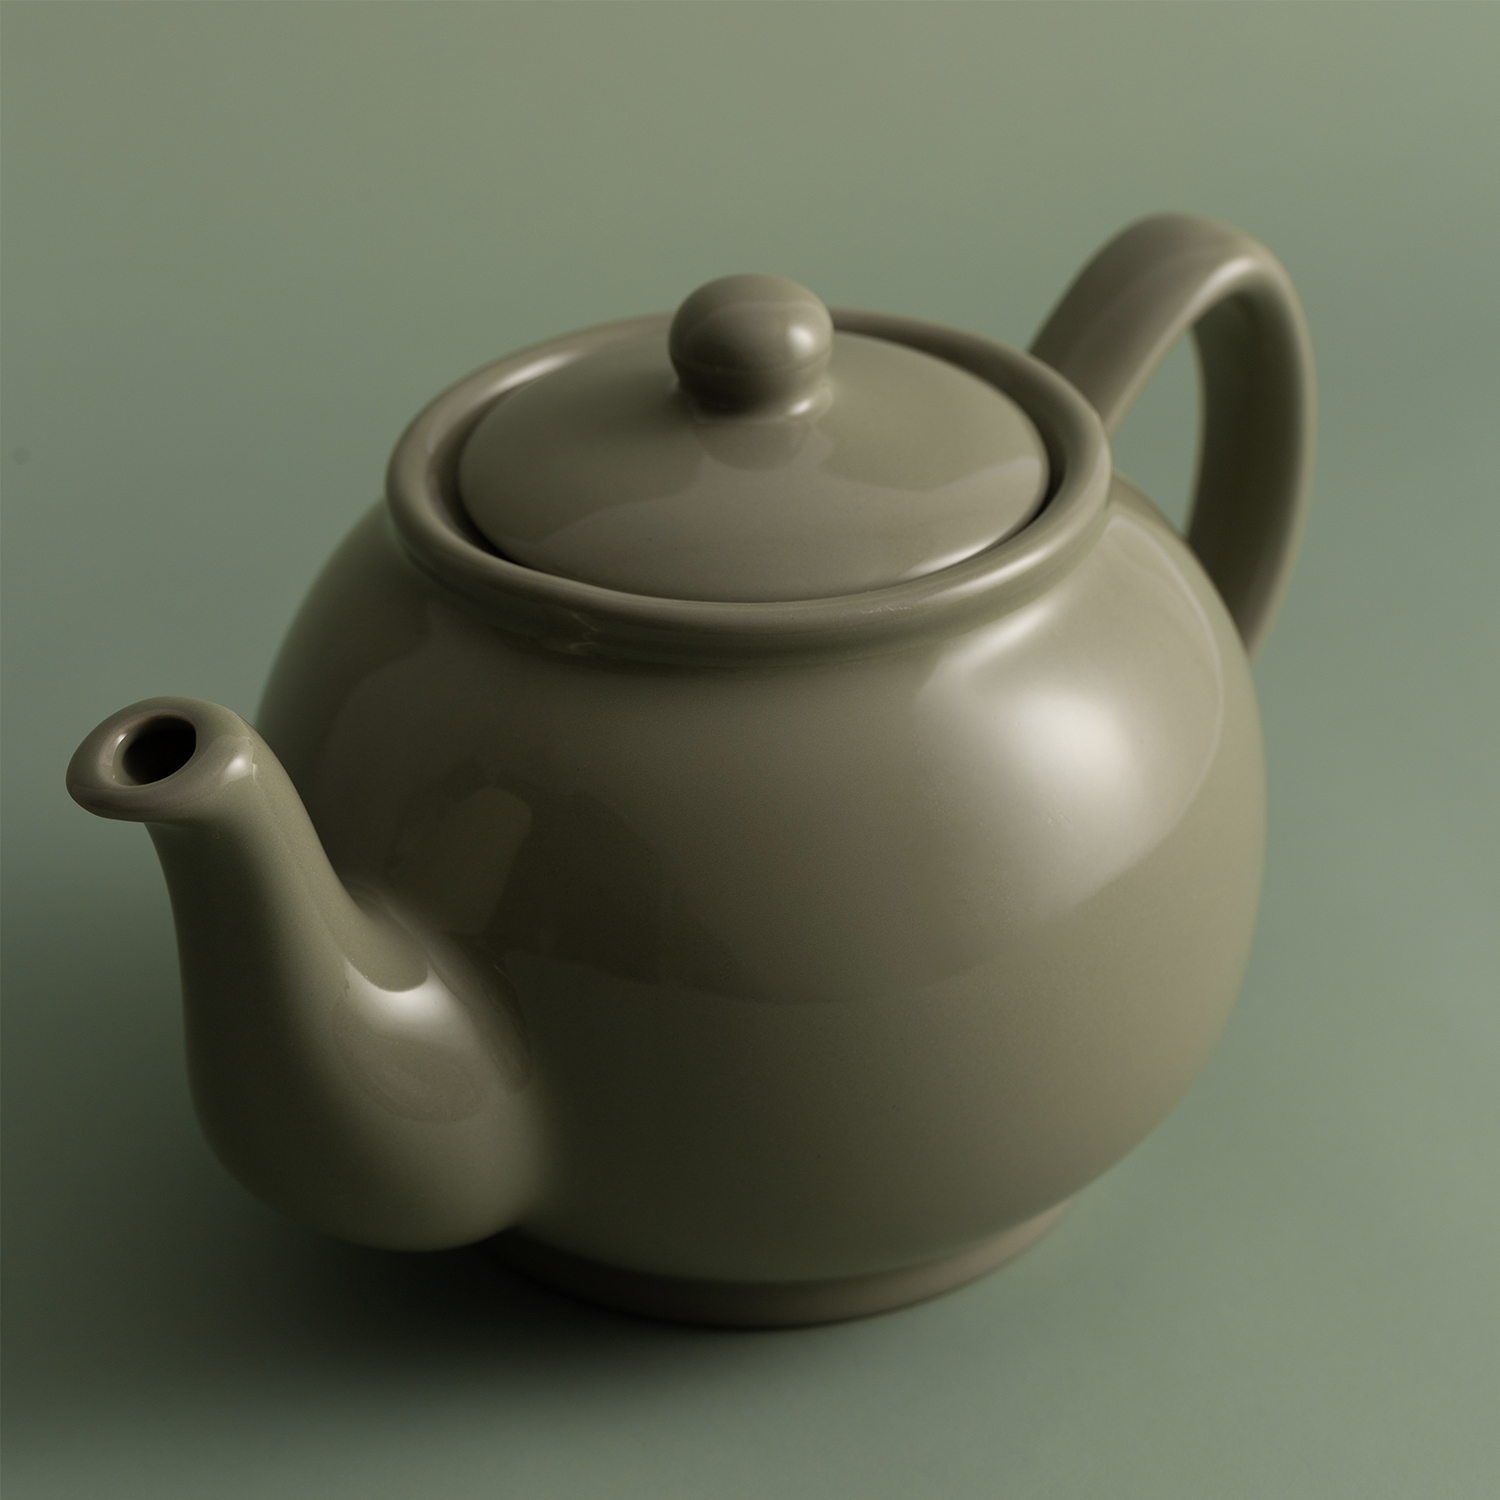 Teekanne | glänzend salbeigrün | 6 Tassen 